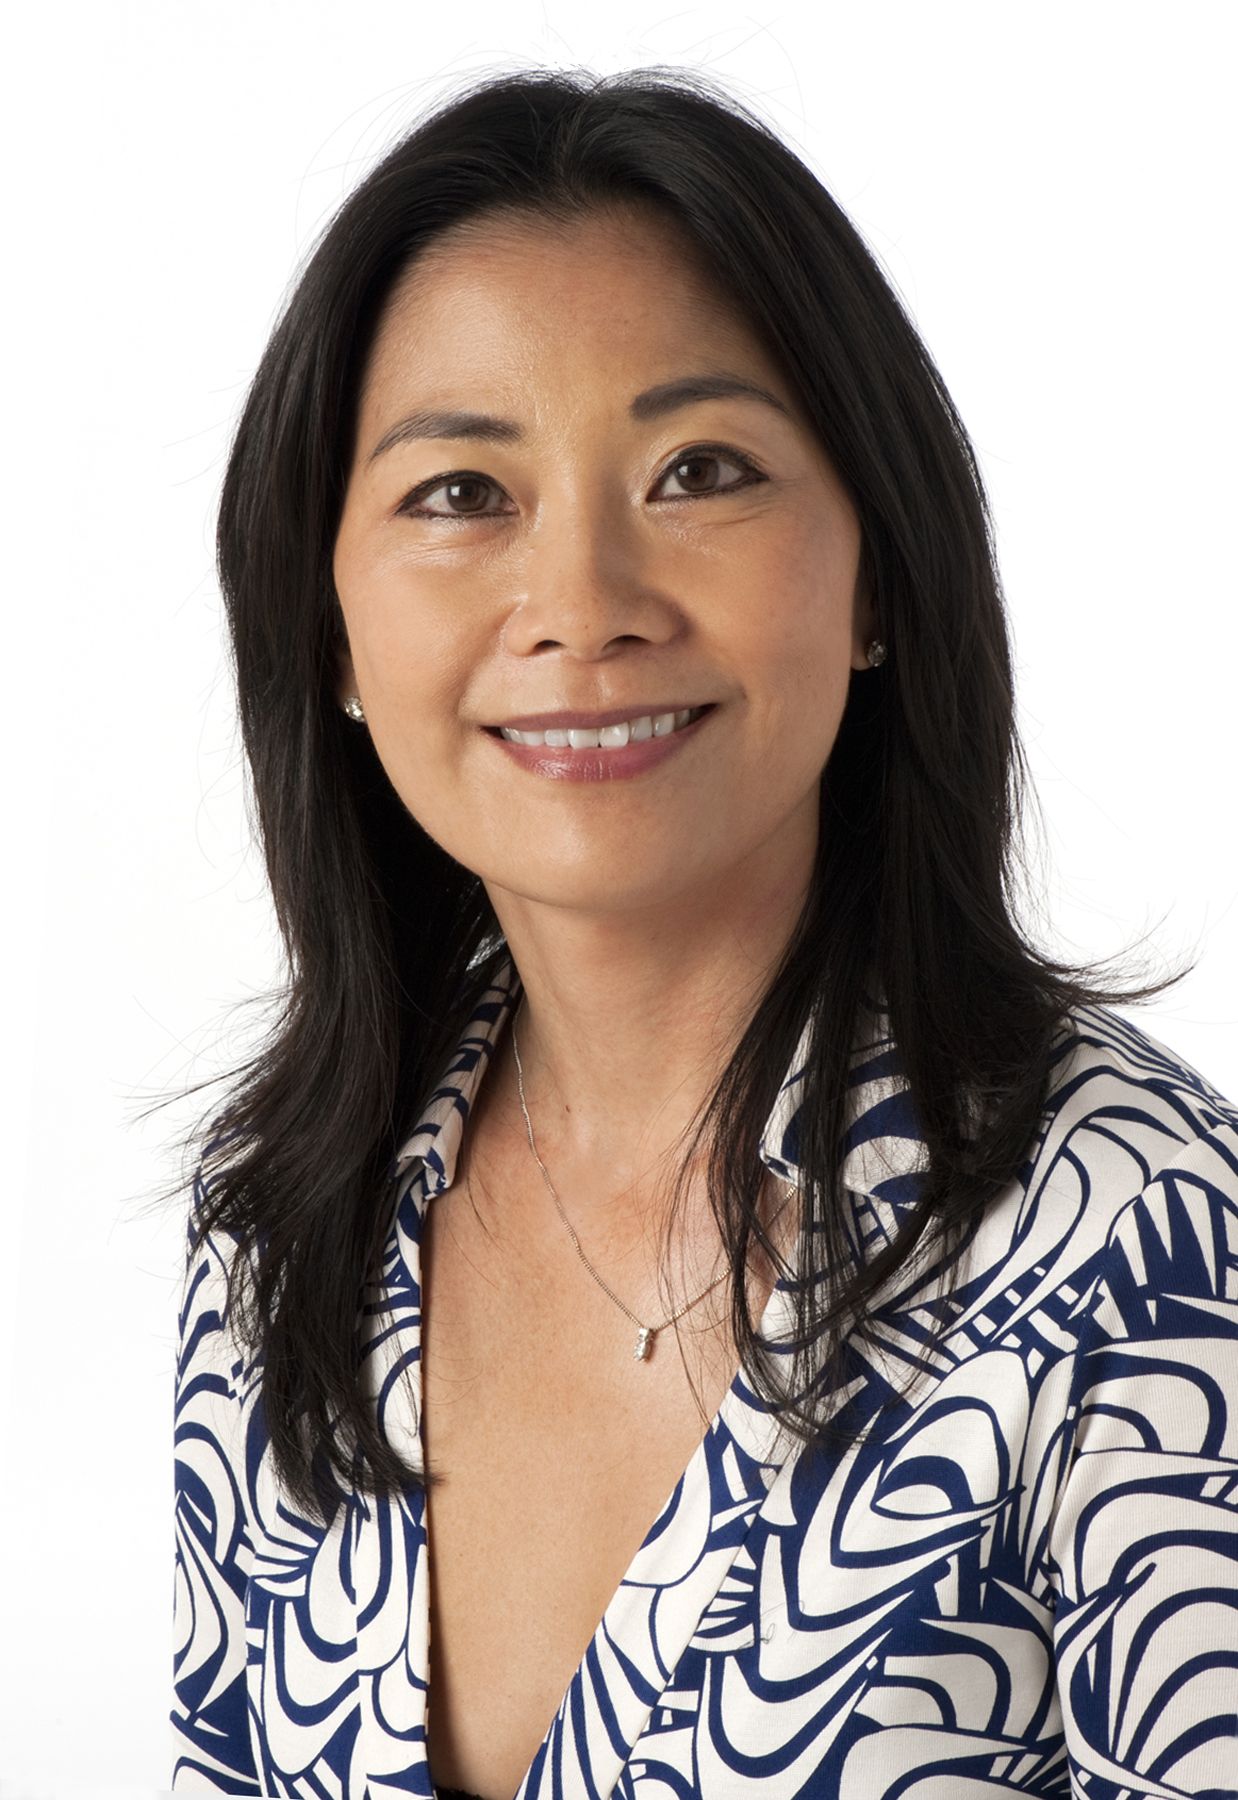 Professor Mimi Tang